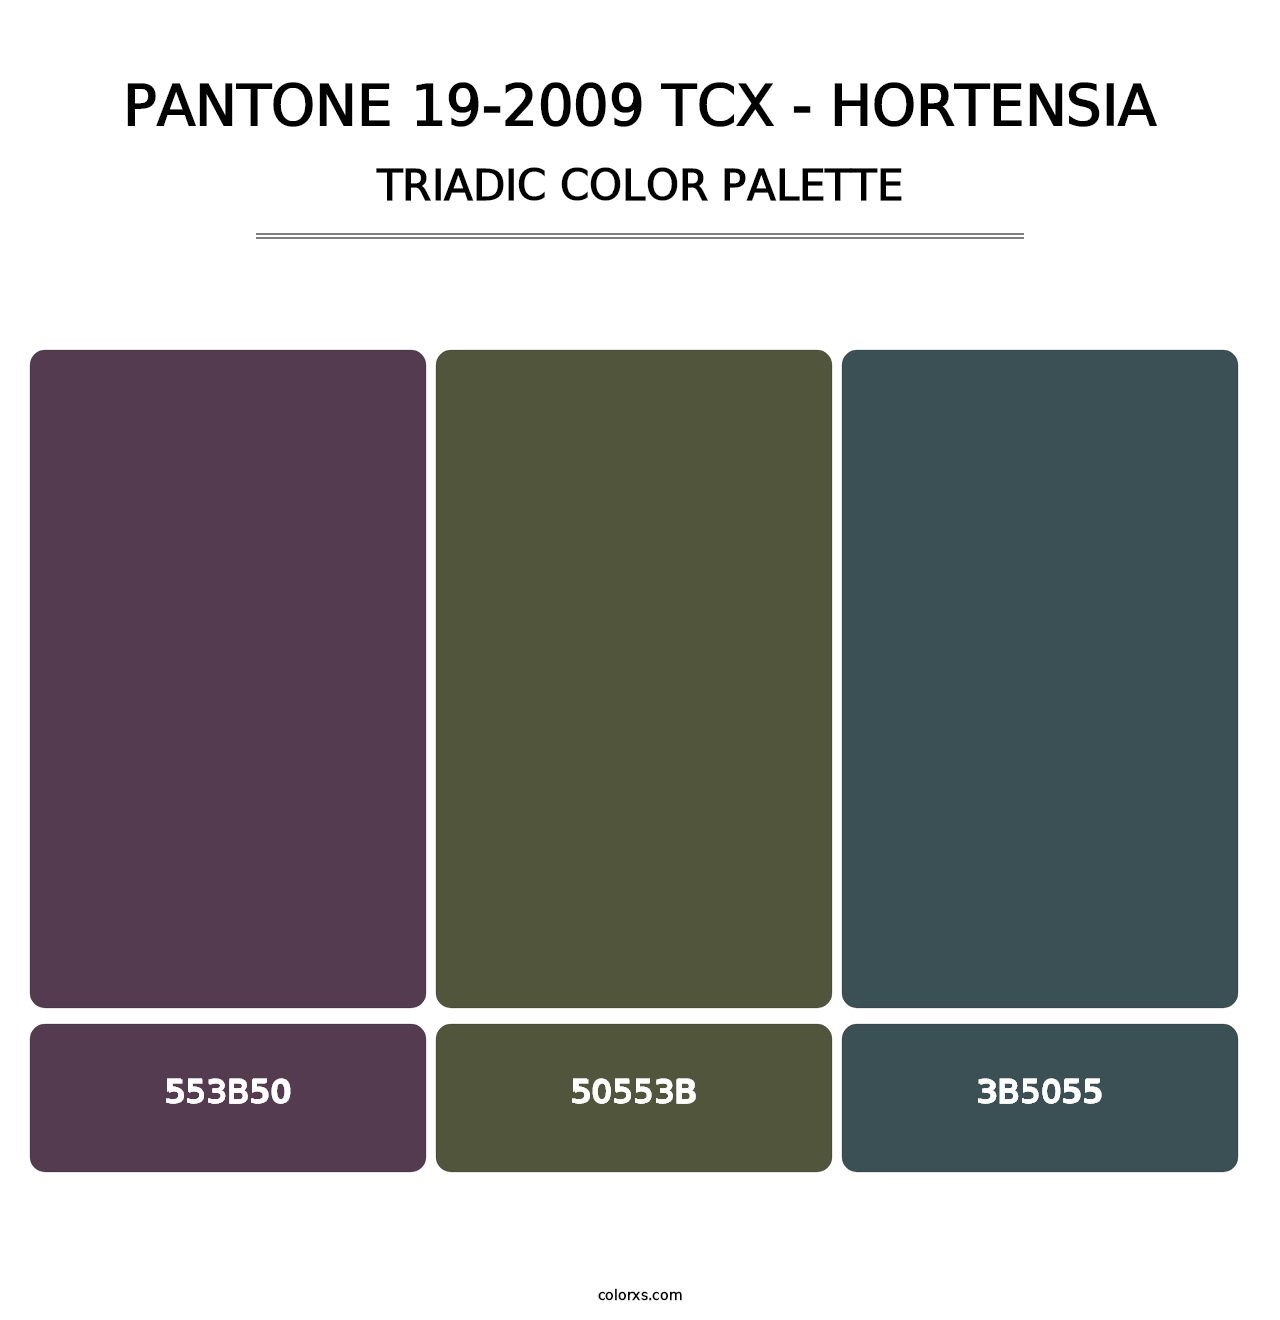 PANTONE 19-2009 TCX - Hortensia - Triadic Color Palette